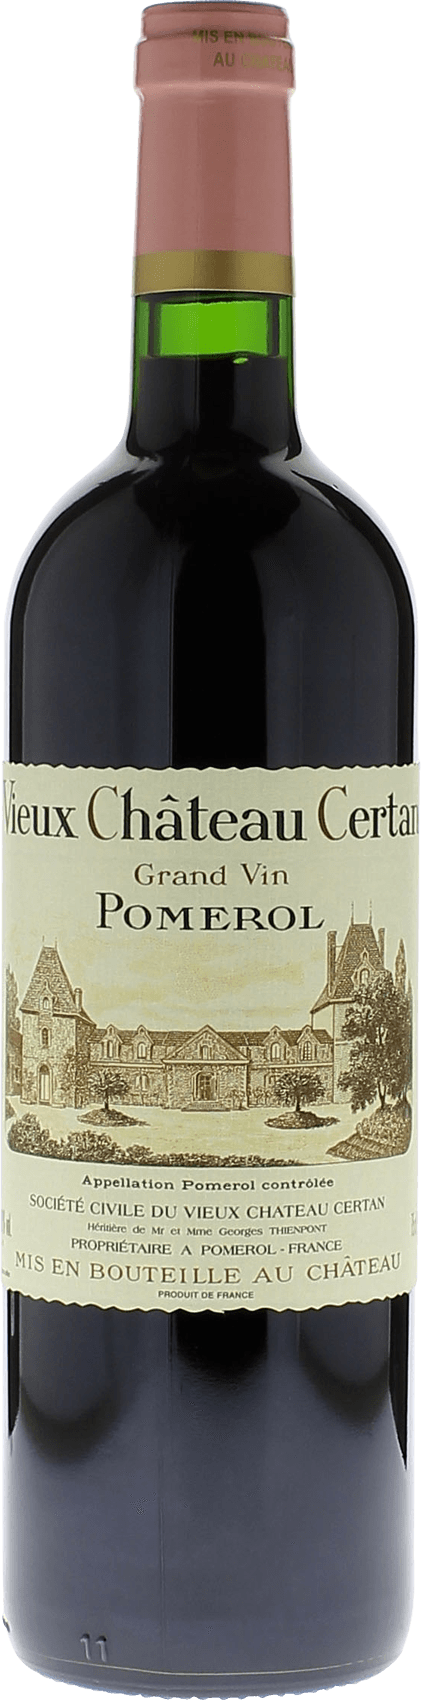 Vieux chteau  certan 1995  Pomerol, Bordeaux rouge